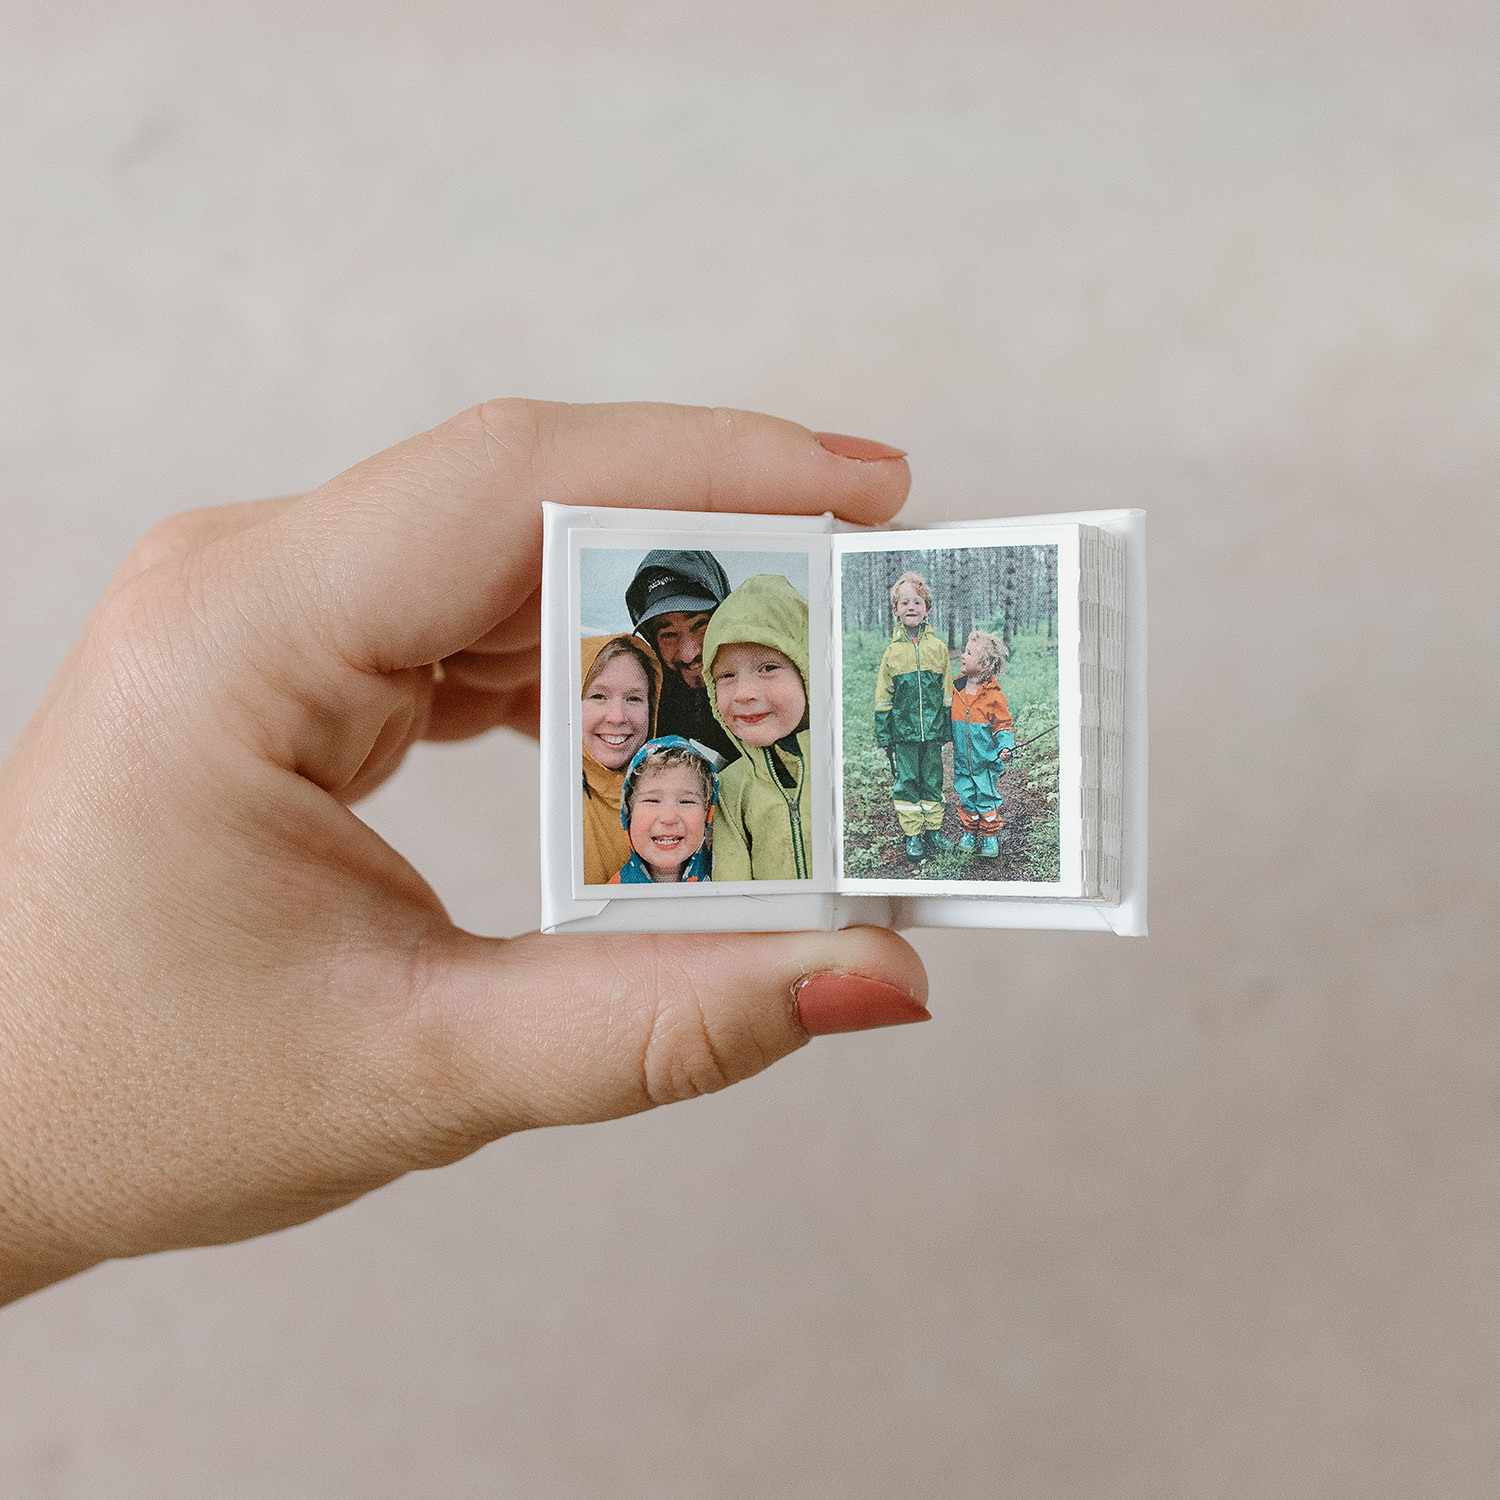 Small Square Photo Album - Mini Photo Book Square Format